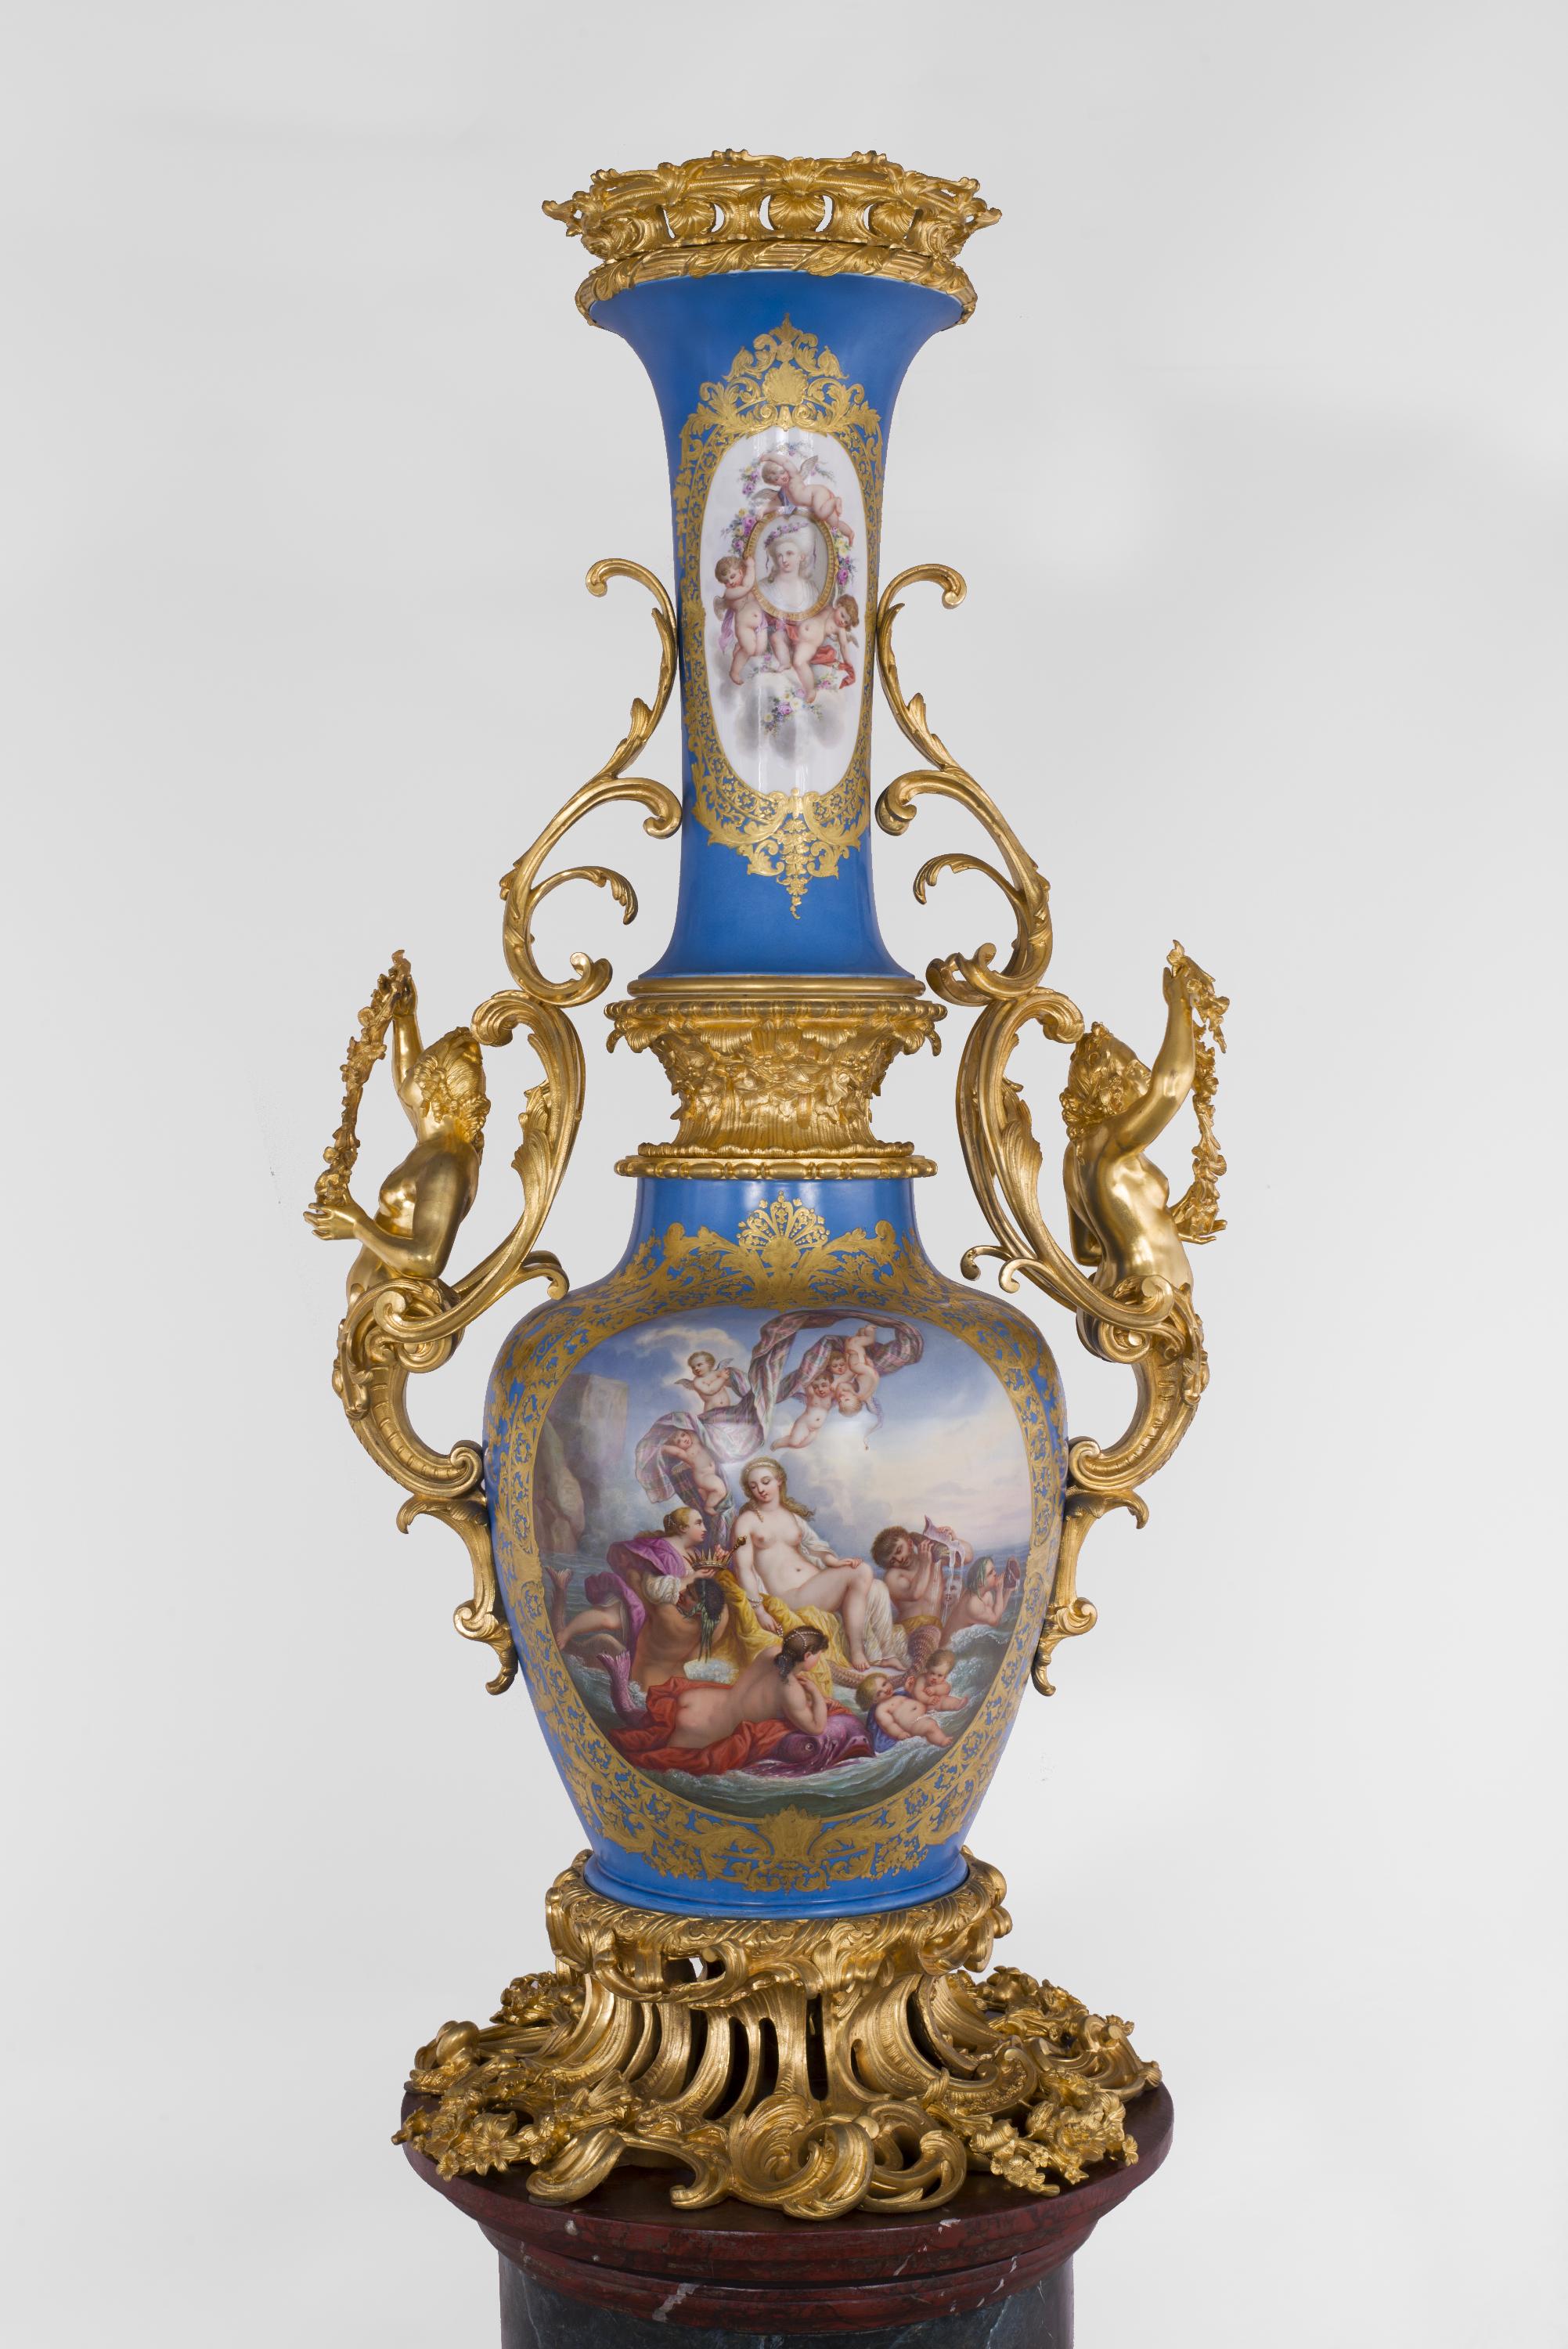 Diese außergewöhnliche Monumentalvase aus Pariser Porzellan, die im Geiste der Produktionen der Manufaktur von Sèvres konzipiert wurde, ist ganz charakteristisch für den Stil von Napoleon III. Der lange Hals der Form ist äußerst selten, ebenso wie